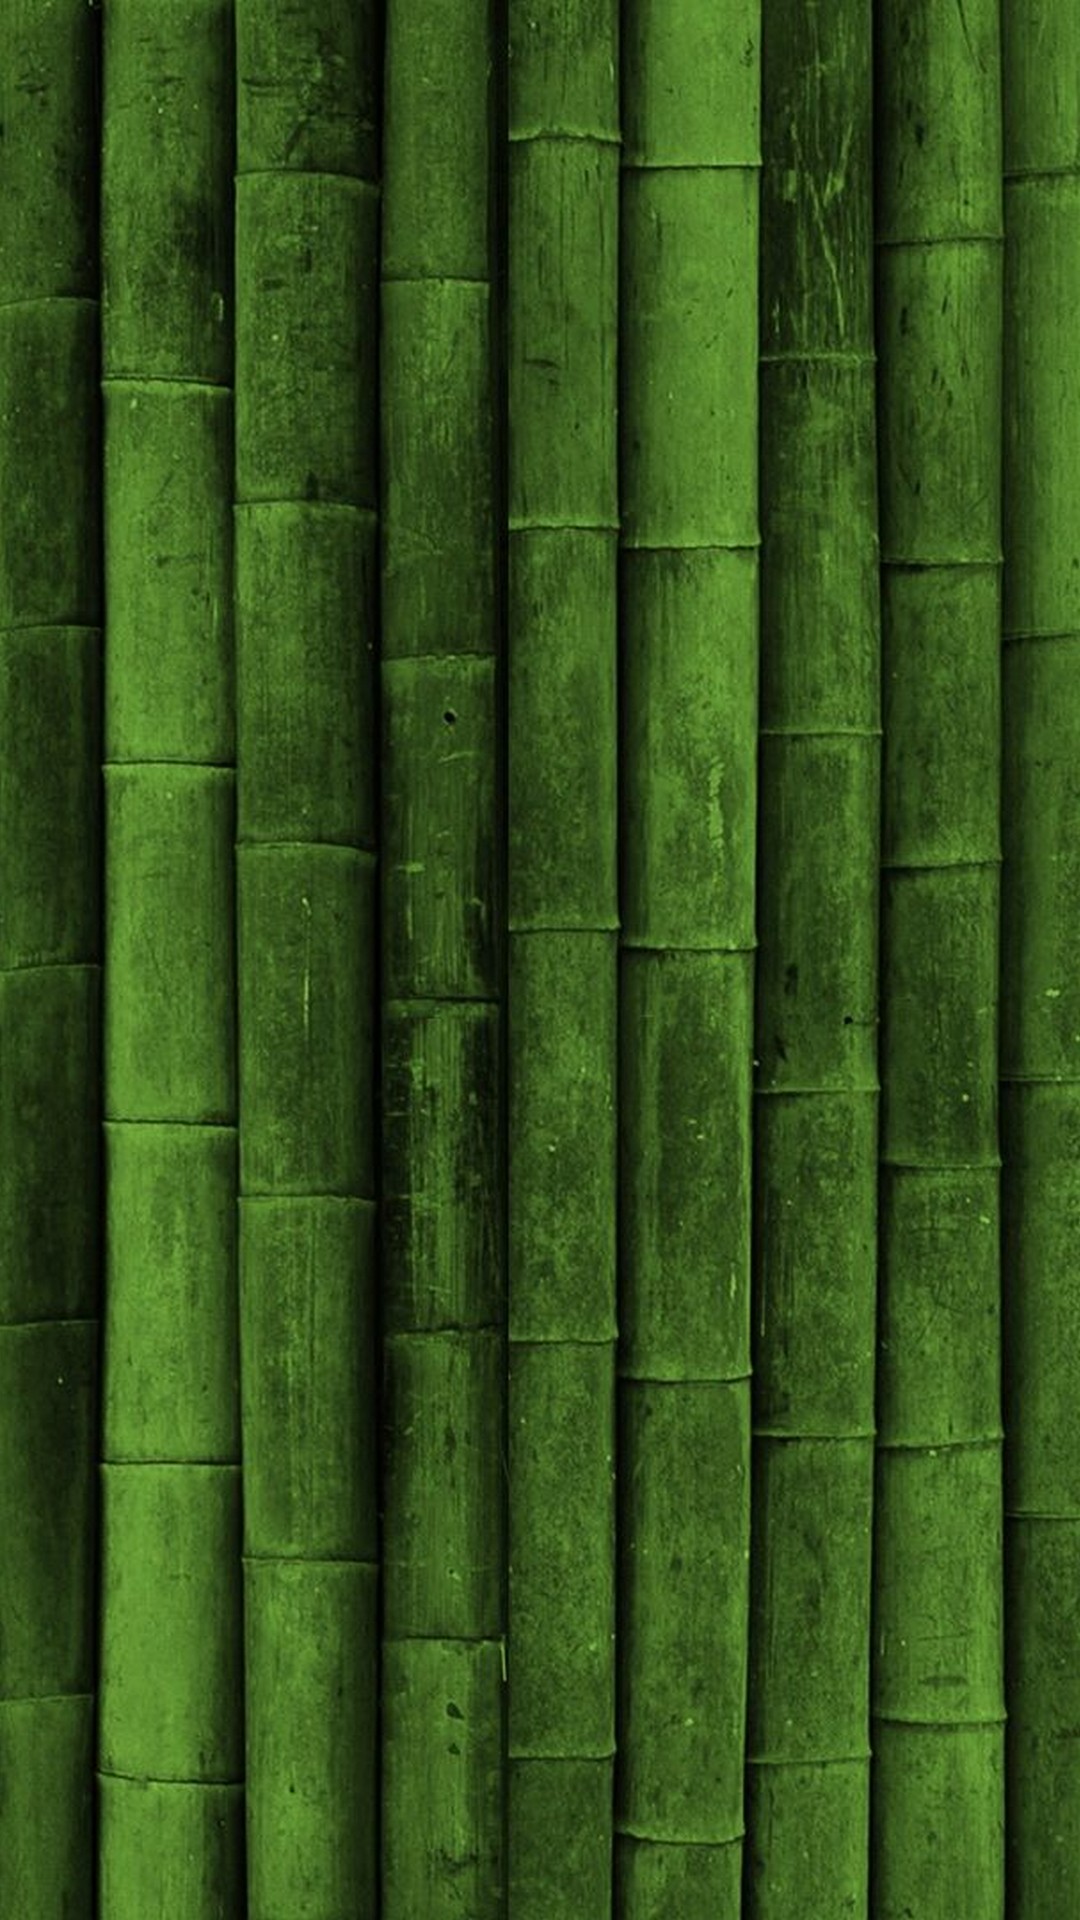 Green Mobile Wallpaper - Iphone Texture Wallpaper Hd , HD Wallpaper & Backgrounds